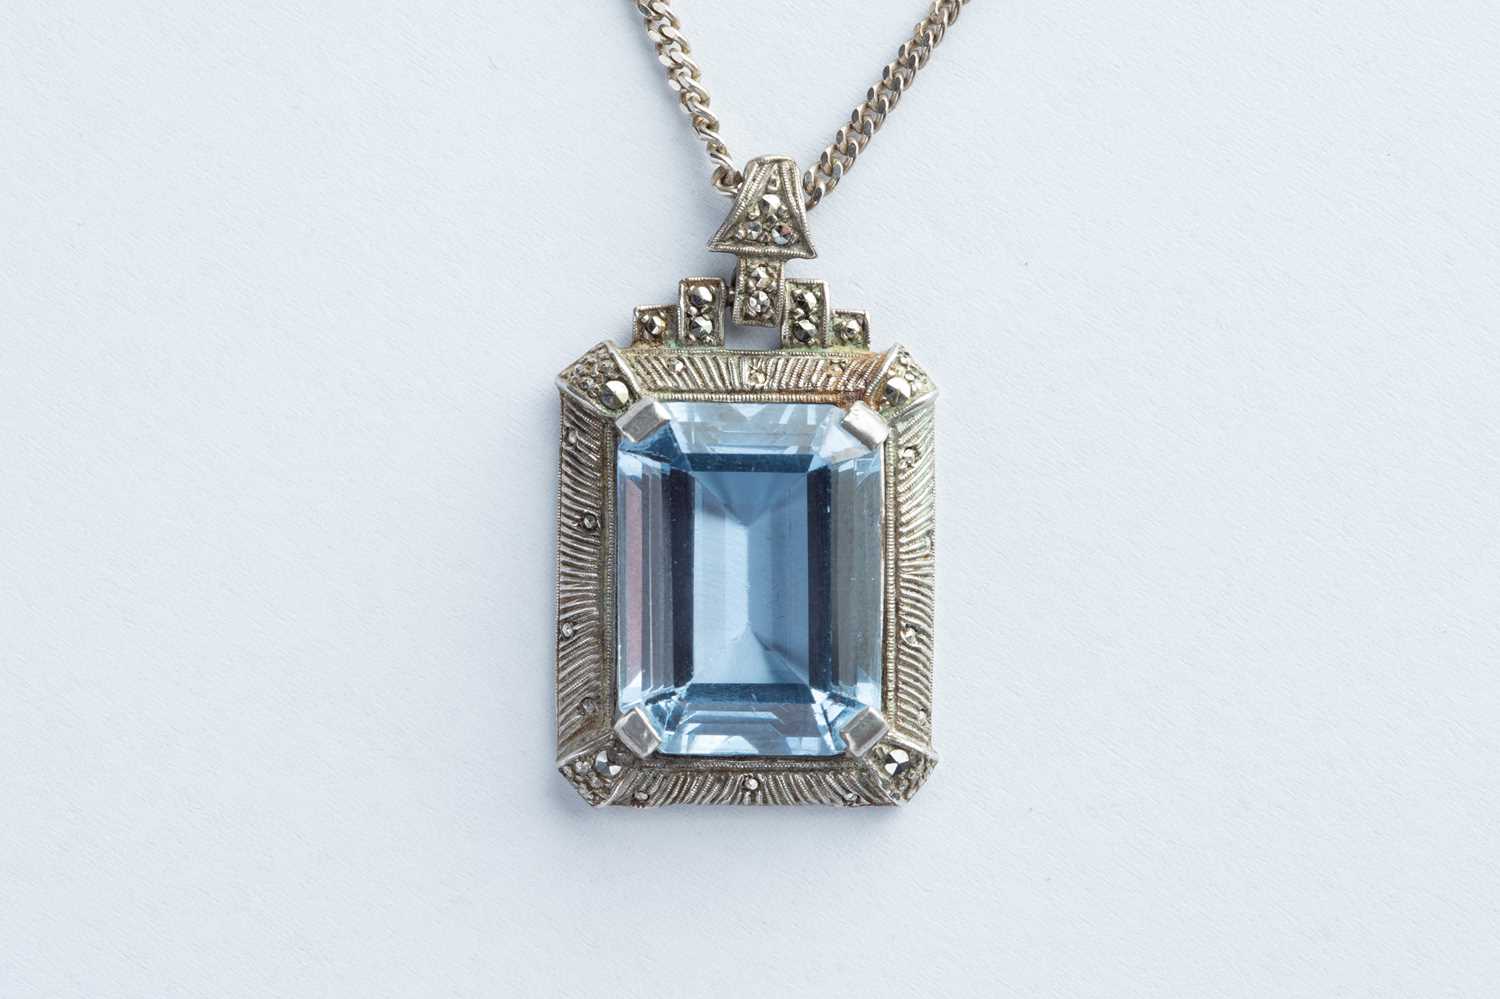 Lot 76 - A Silver Art Deco Style Blue Paste & Marcasite Pendant Necklace